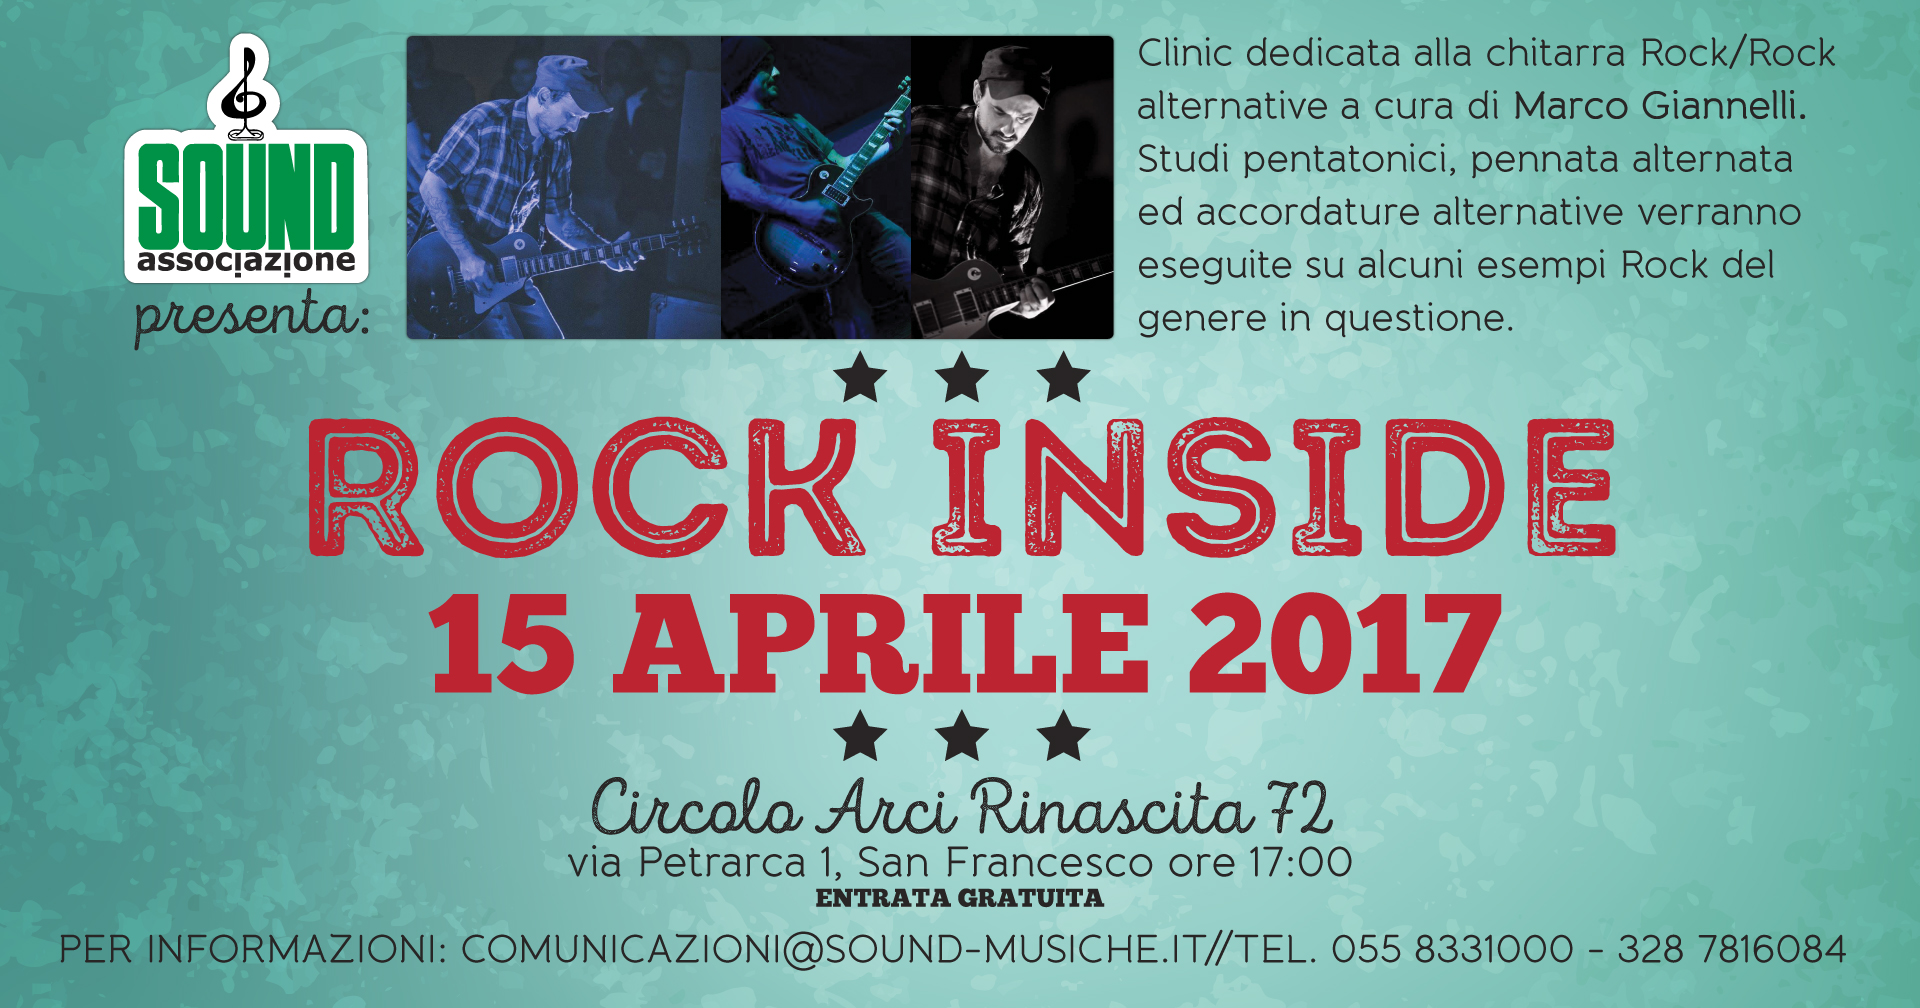 Rock Inside Sabato 15 Aprile ore 17:00 Circolo Rinascita 72 San Francesco